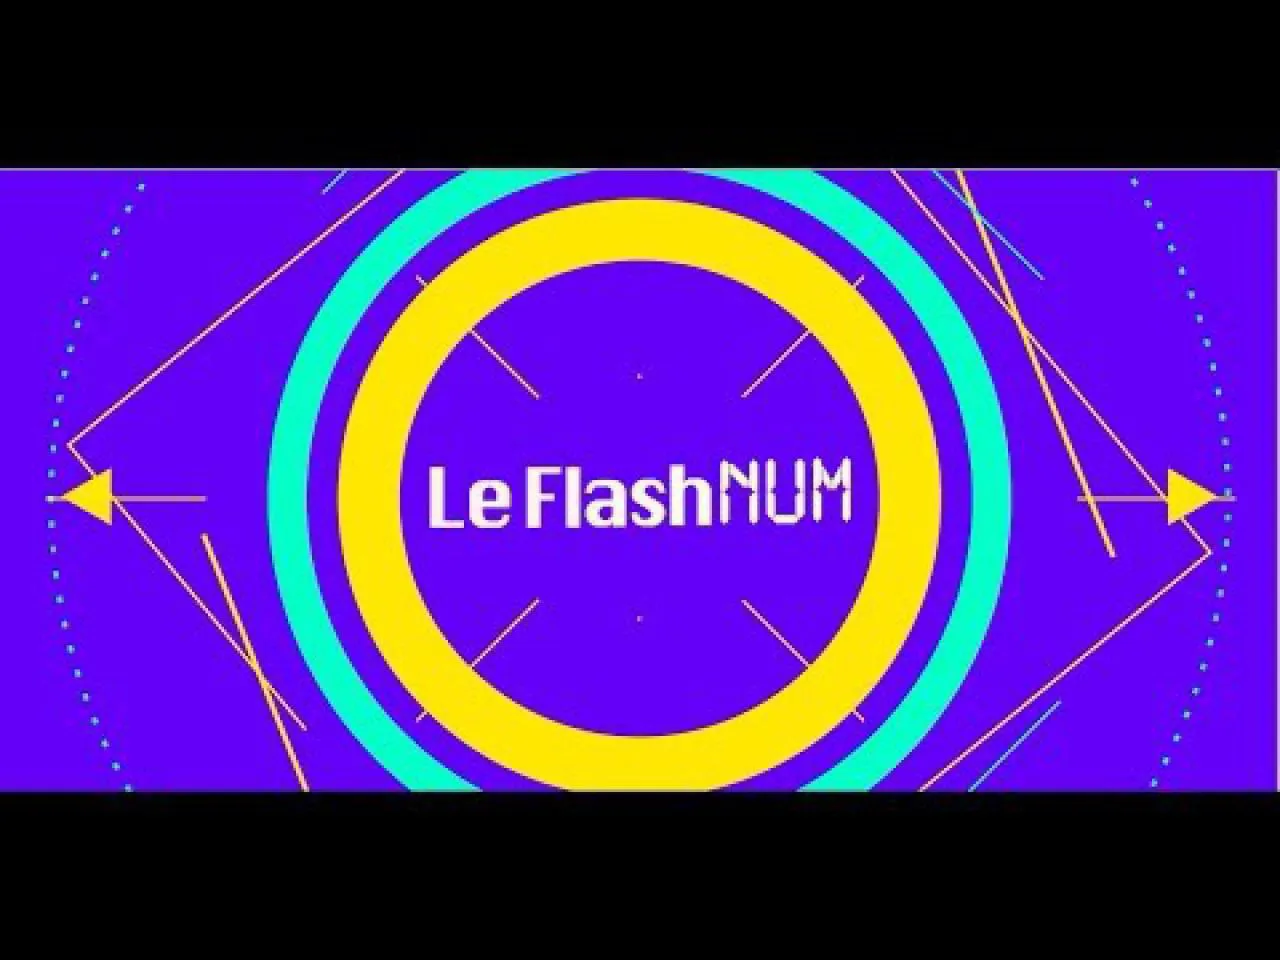 Flashnum #11